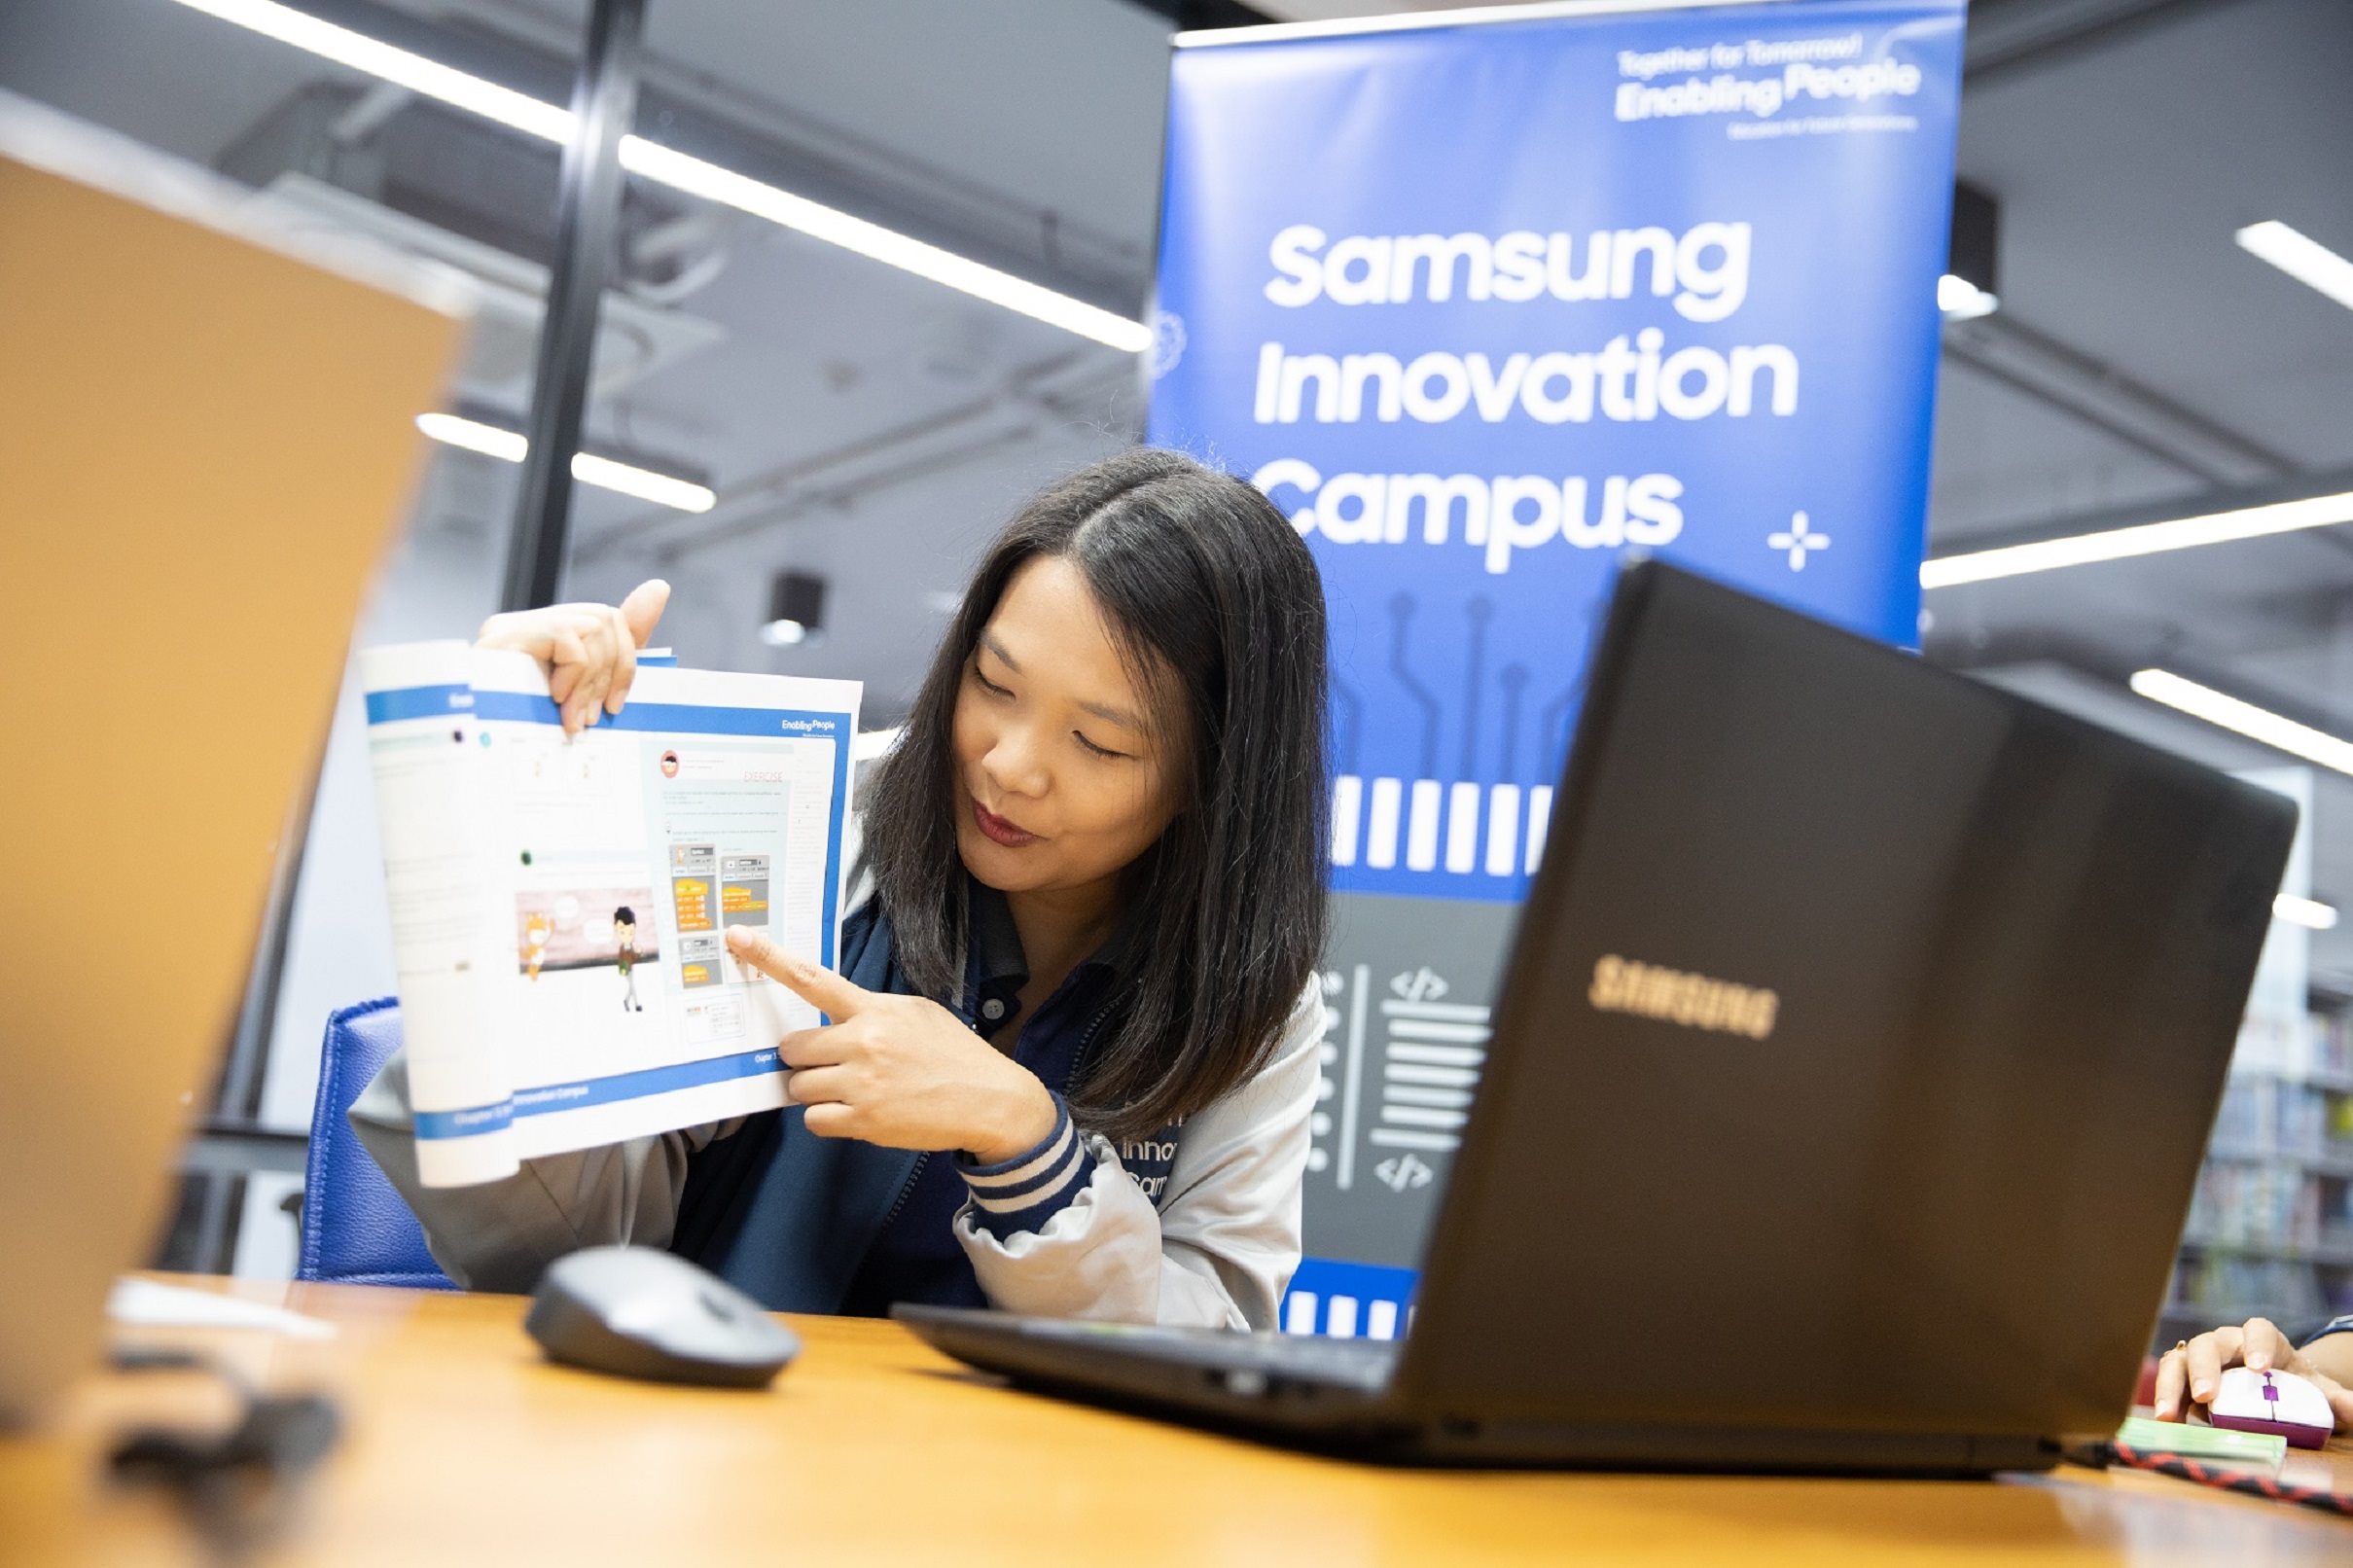 Samsung Innovation Campus ปั้นเรียนโค้ดดิ้งออนไลน์ได้ผล นวัตกรรุ่นเยาว์ชม ได้ทั้งความรู้และประสบการณ์ใหม่